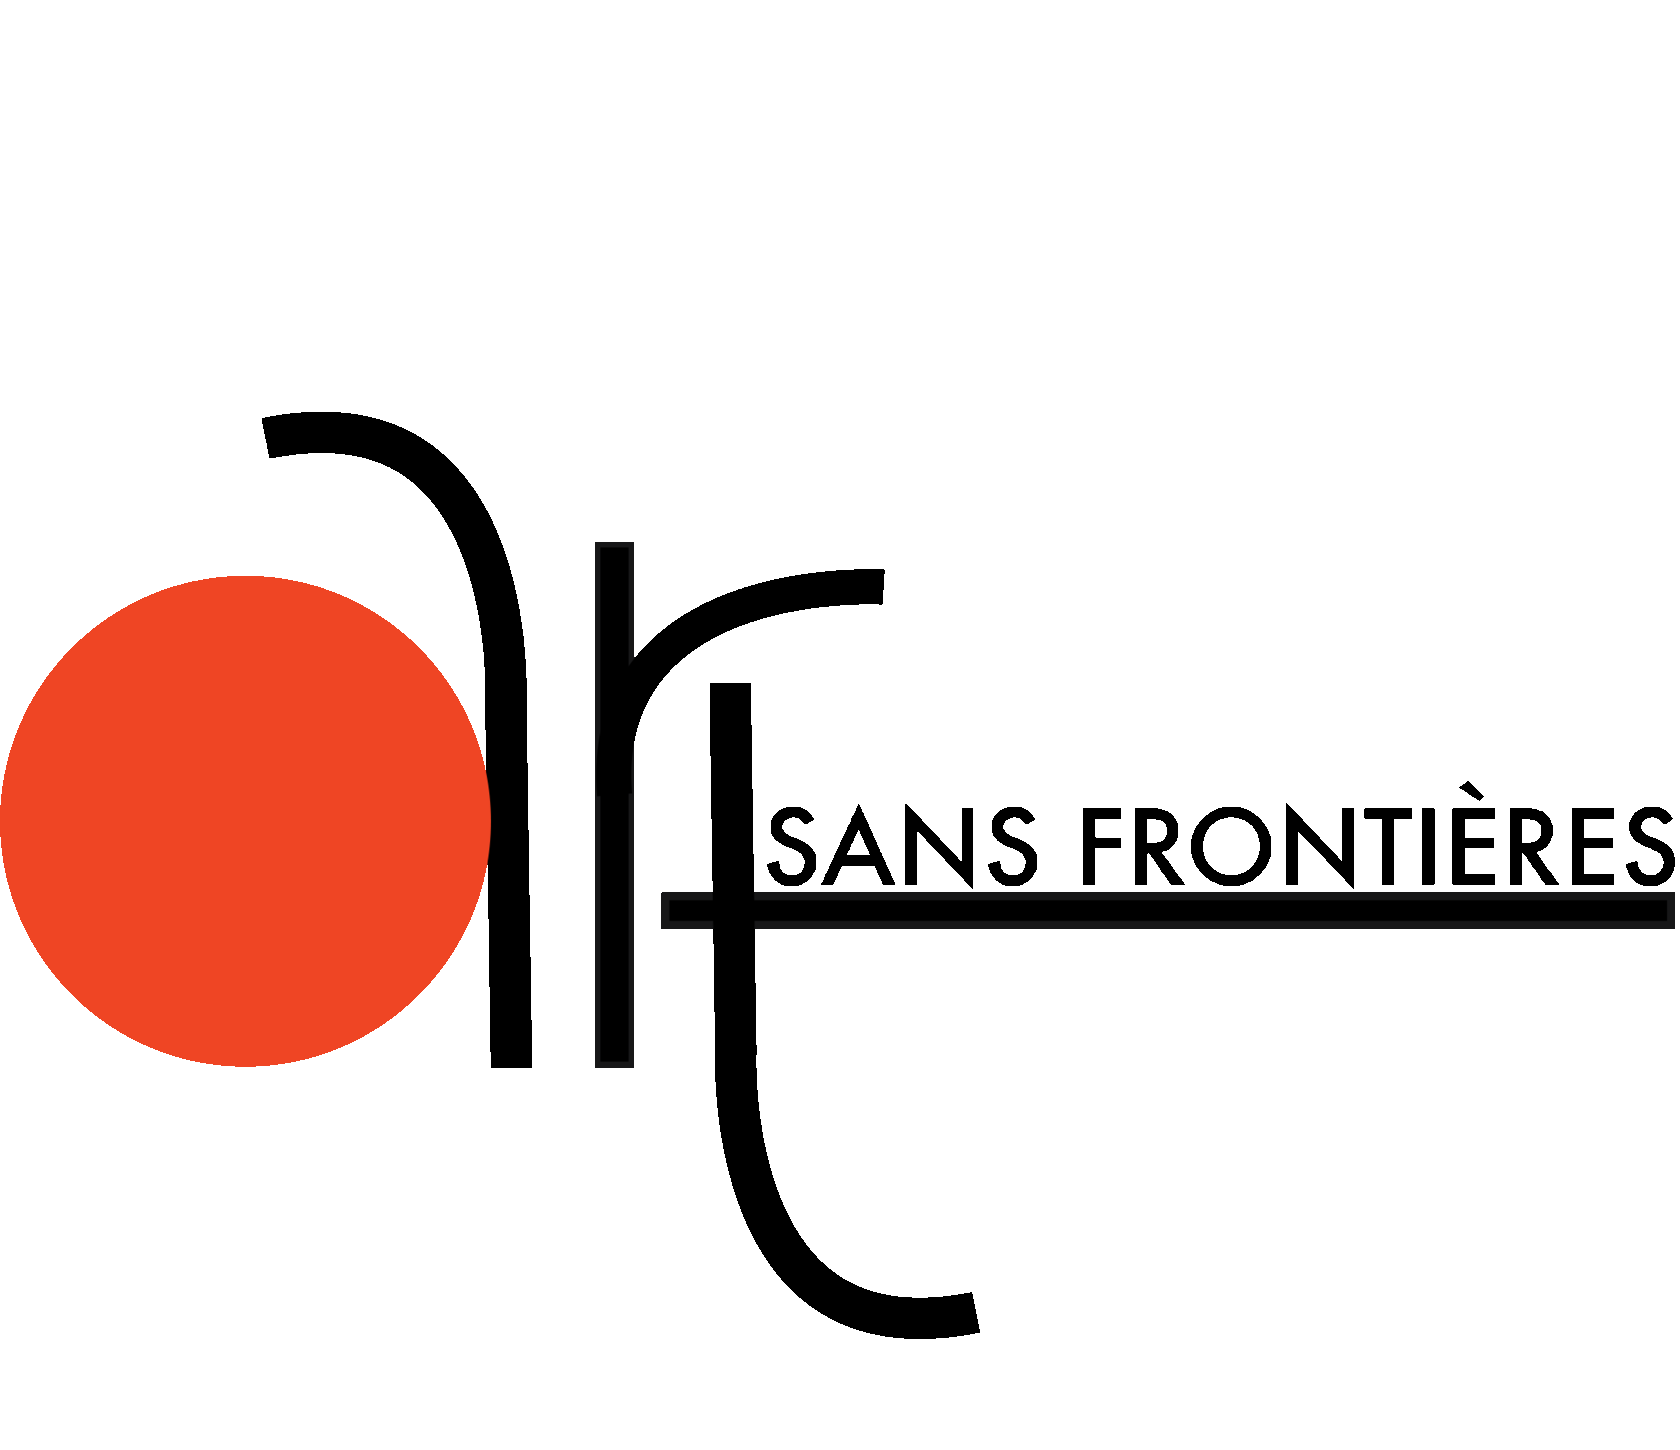 Art Sans Frontières